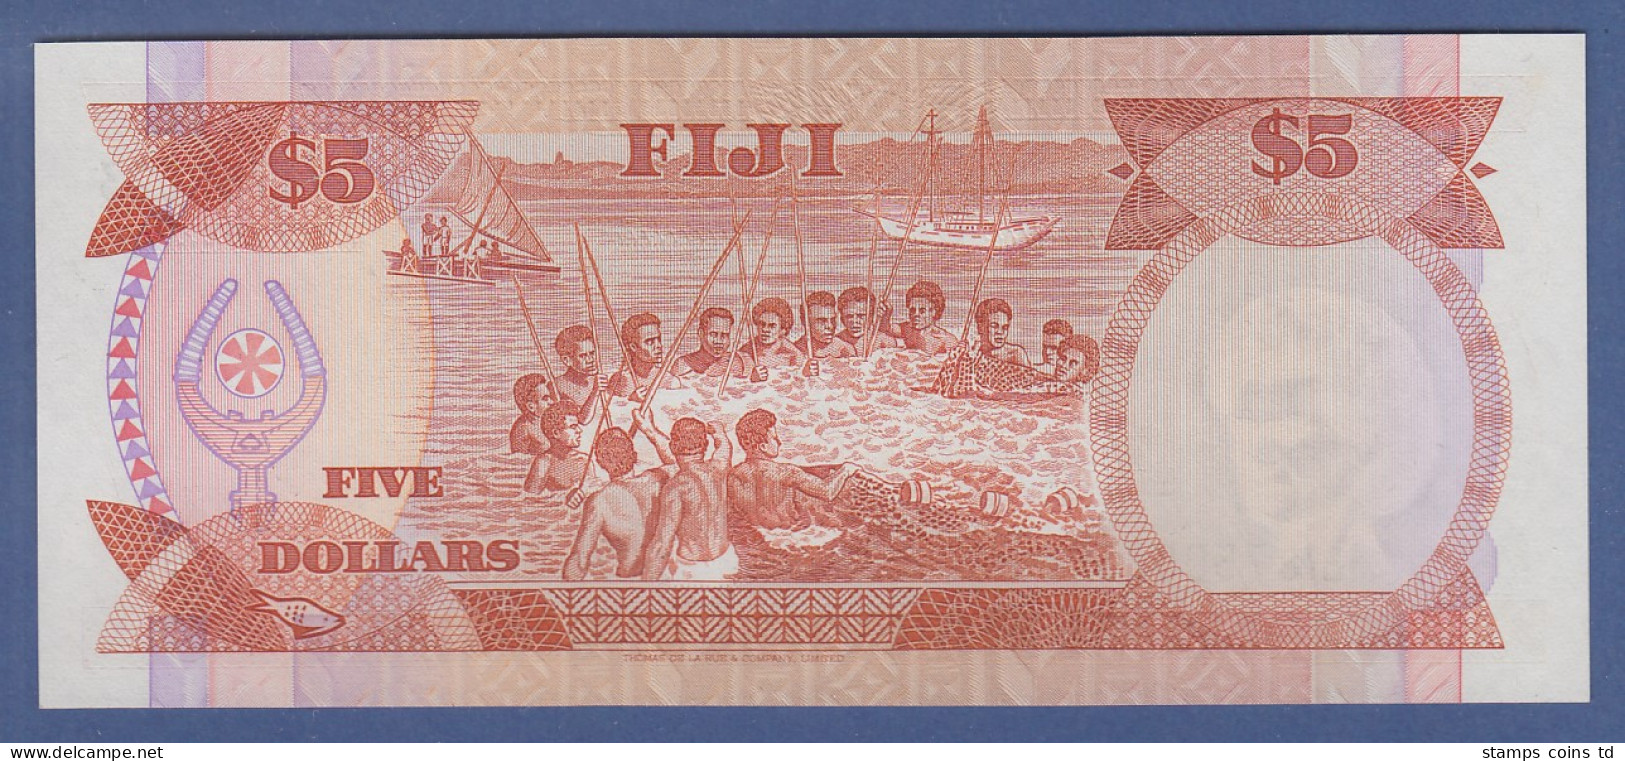 Banknote Fiji Fidschi-Inseln 5 Dollar 1980 - Other - Oceania